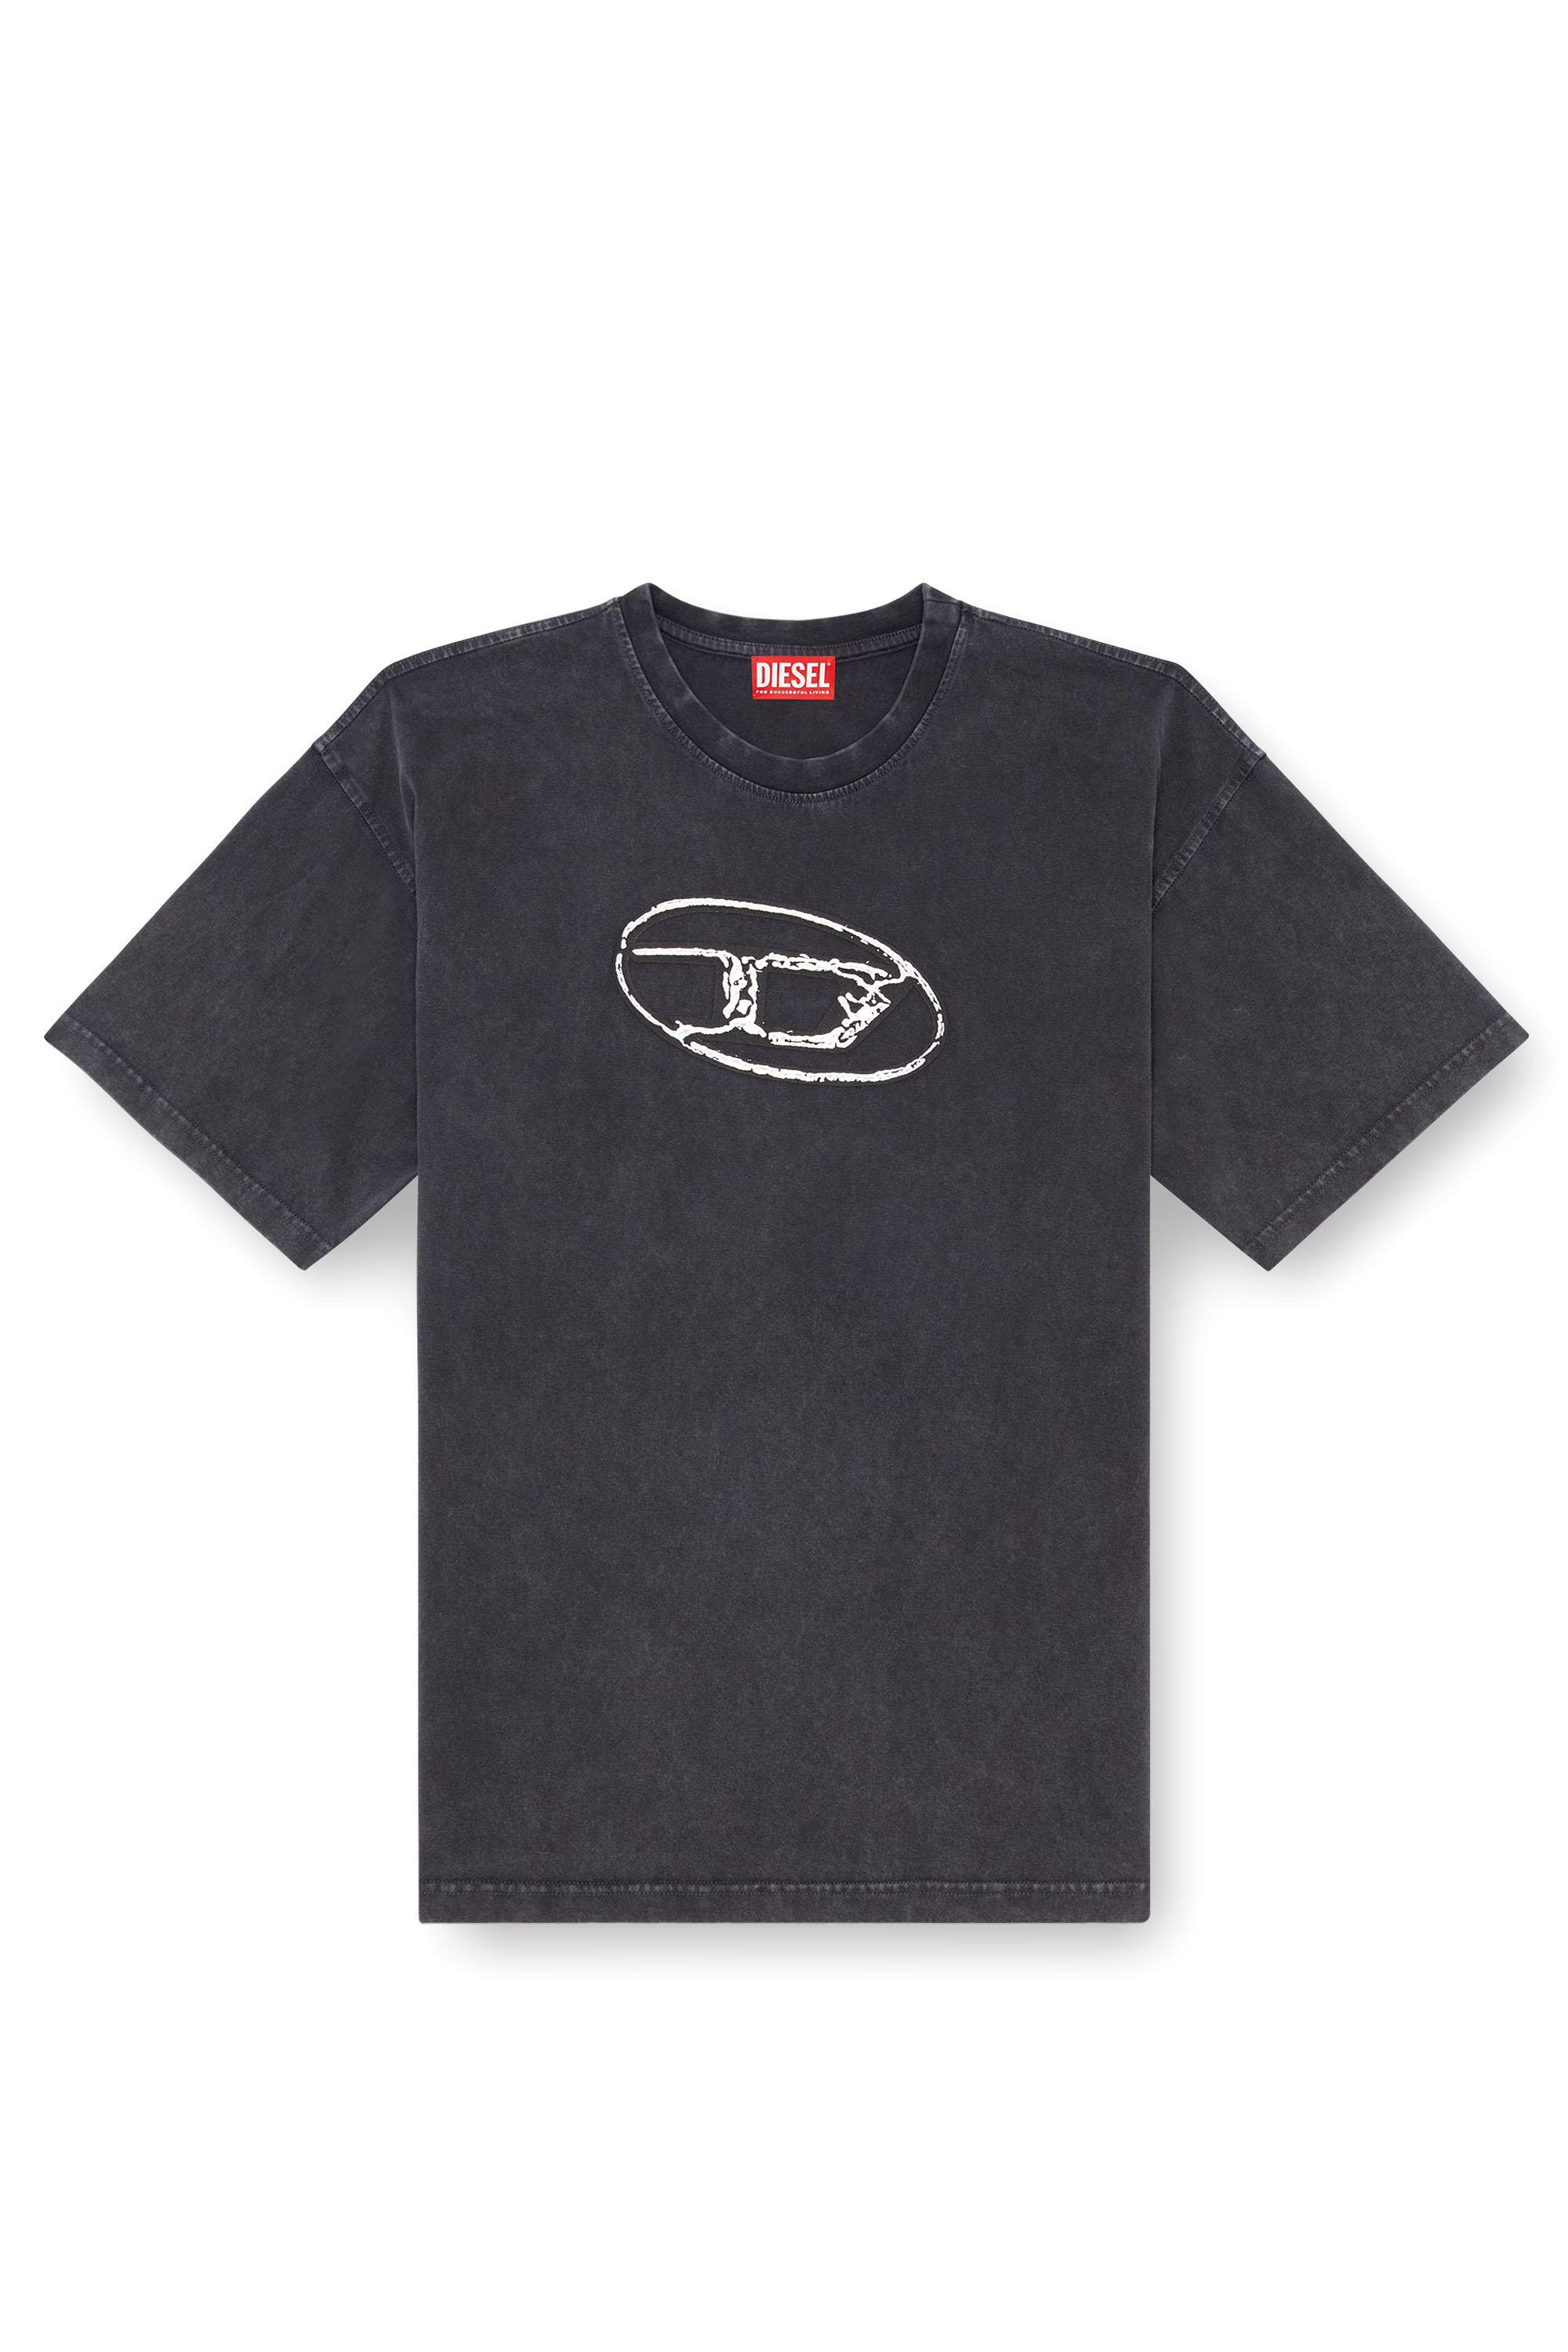 Diesel - T-BOXT-Q22, Homme T-shirt délavé avec imprimé Oval D in Noir - Image 1